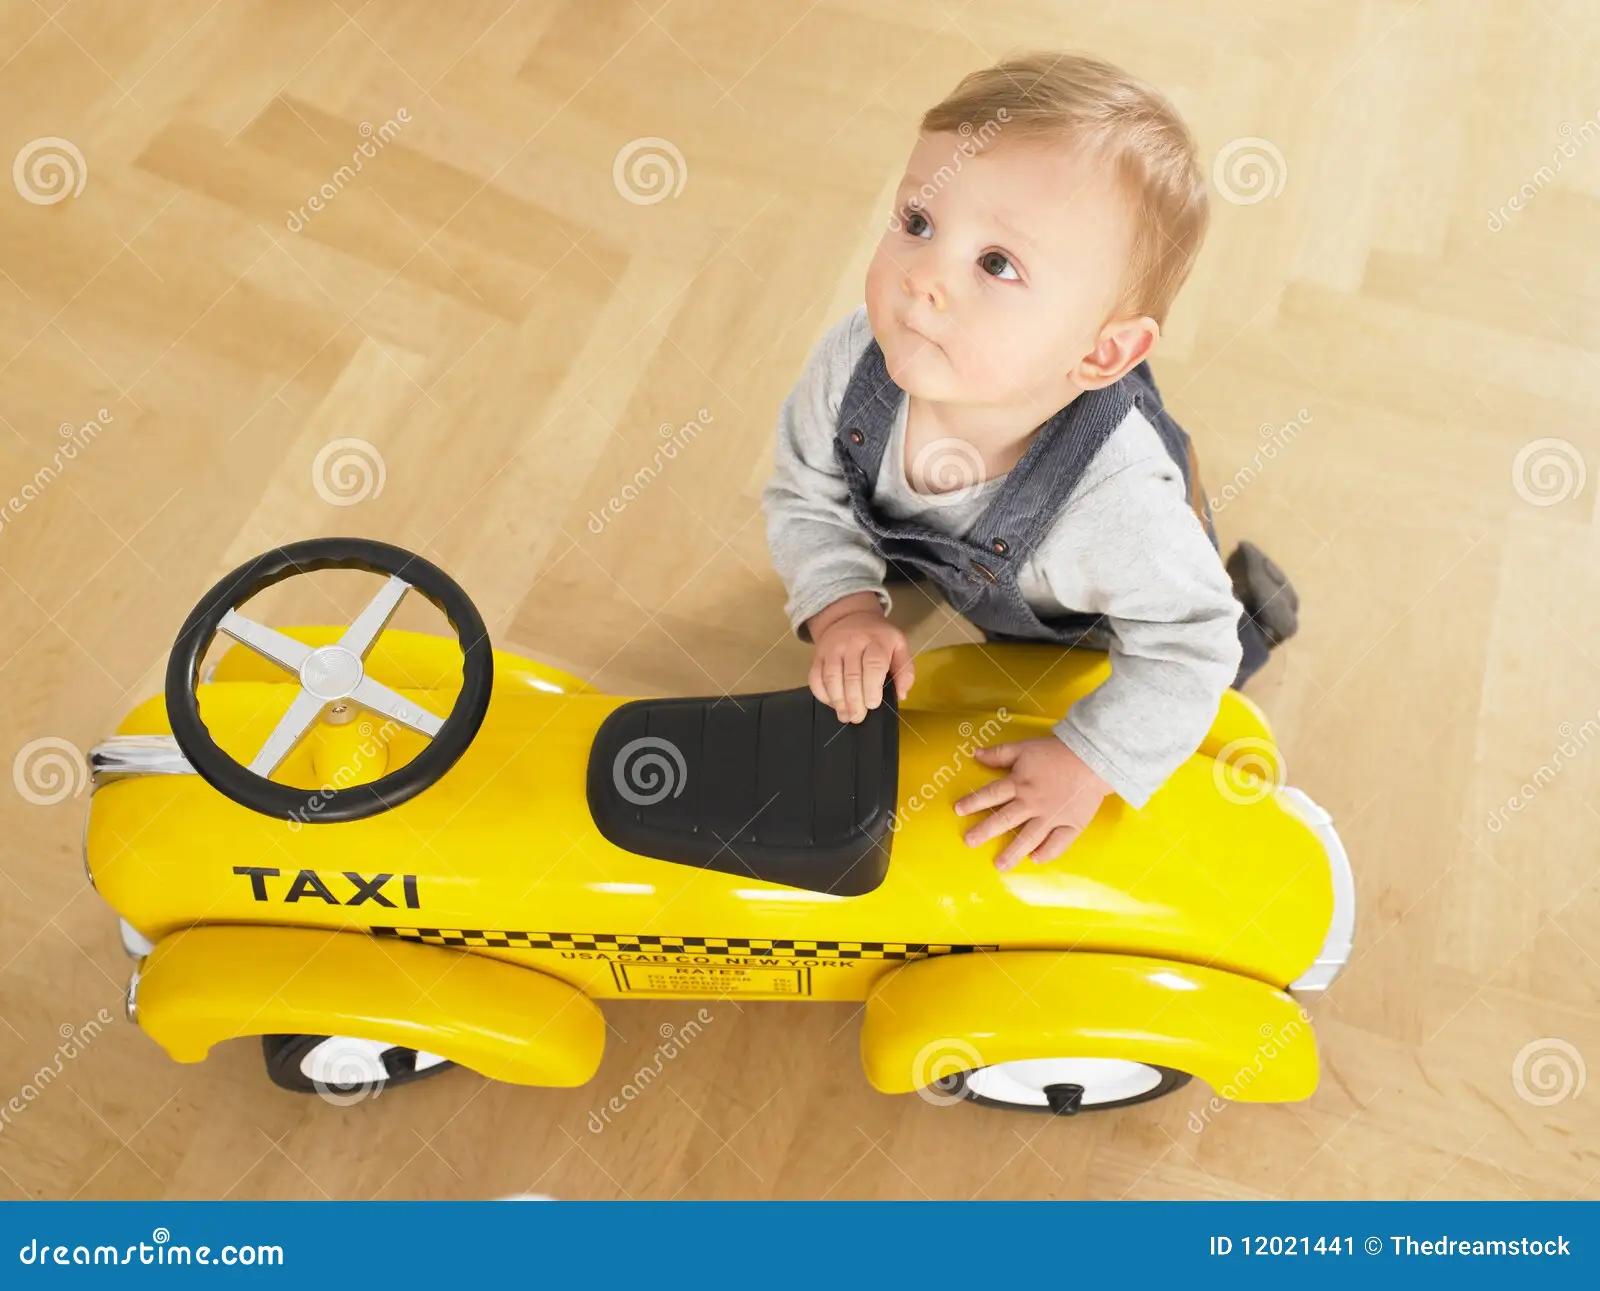 bebes taxi - Cómo transportar a un bebé recién nacido